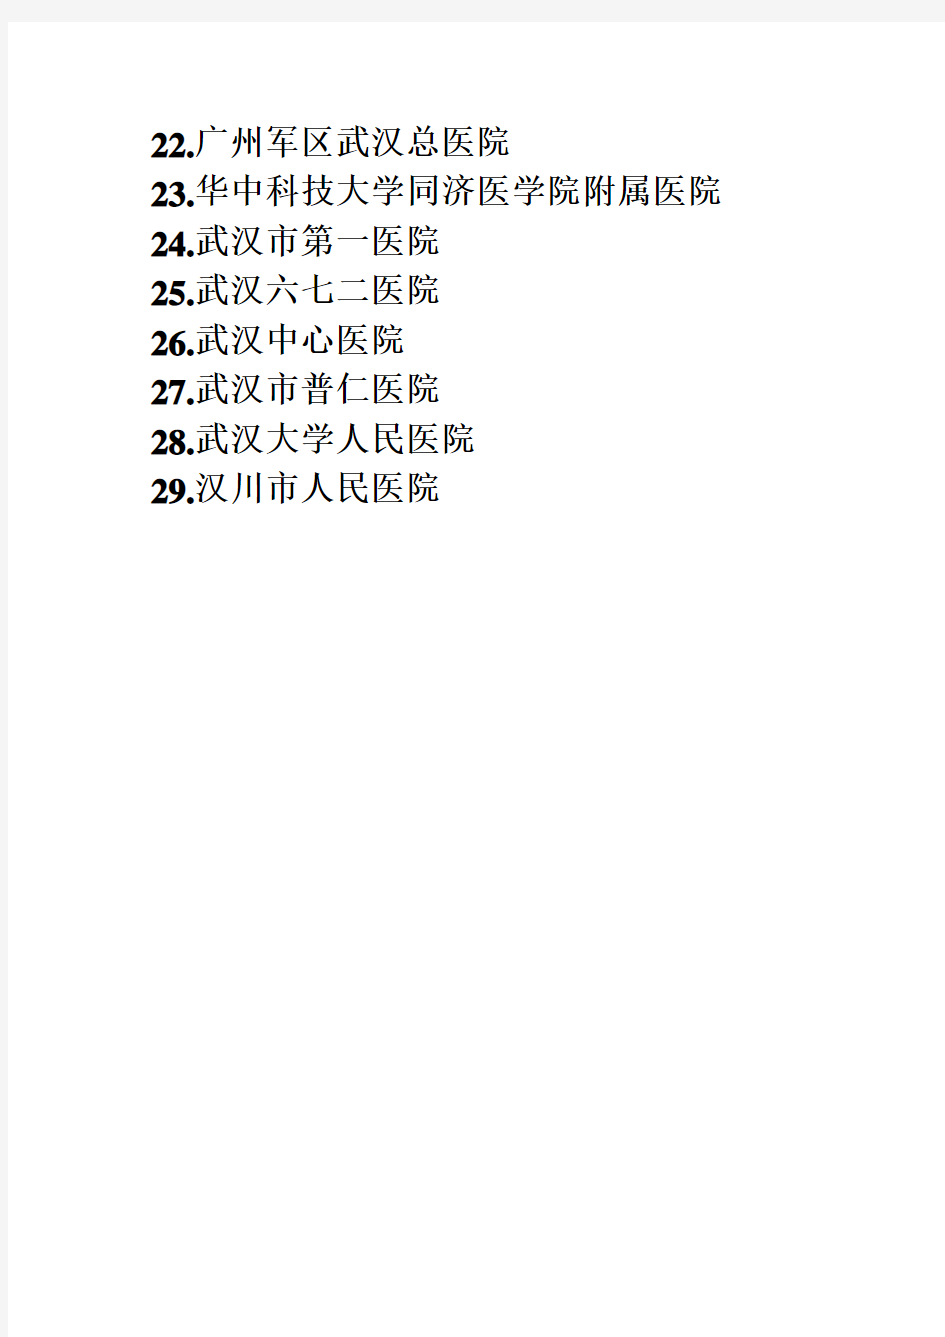 武汉市肾病医院名单